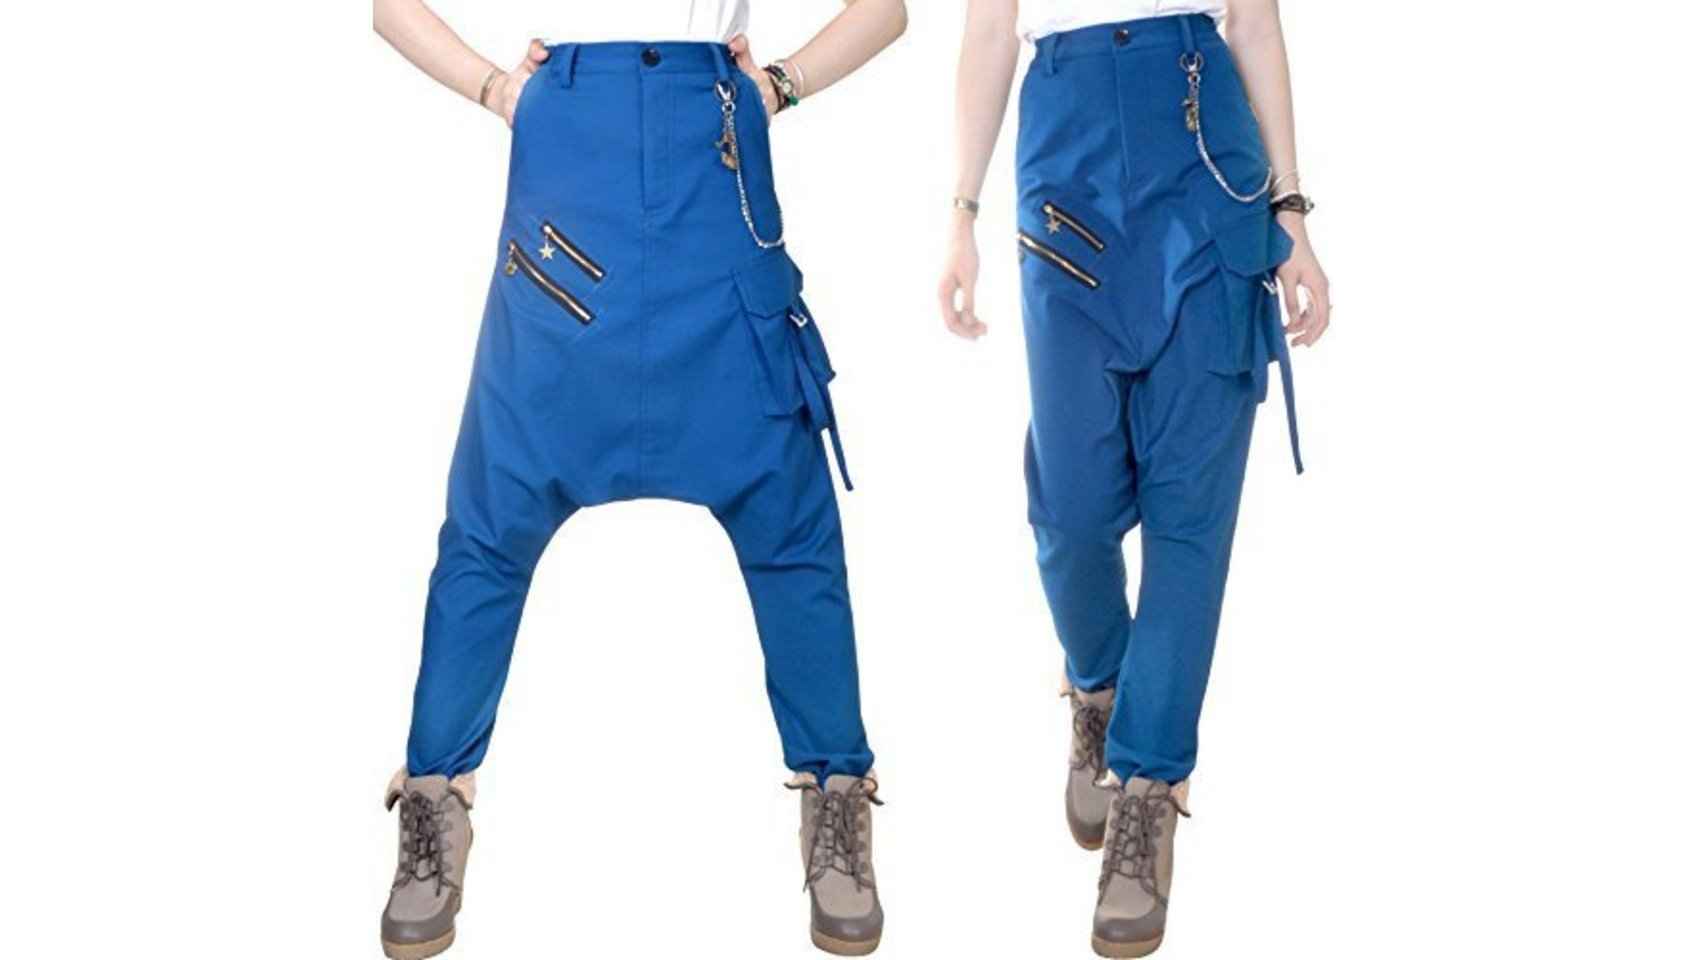 ¿Os imagináis intentando correr para coger el metro con estos pantalones?